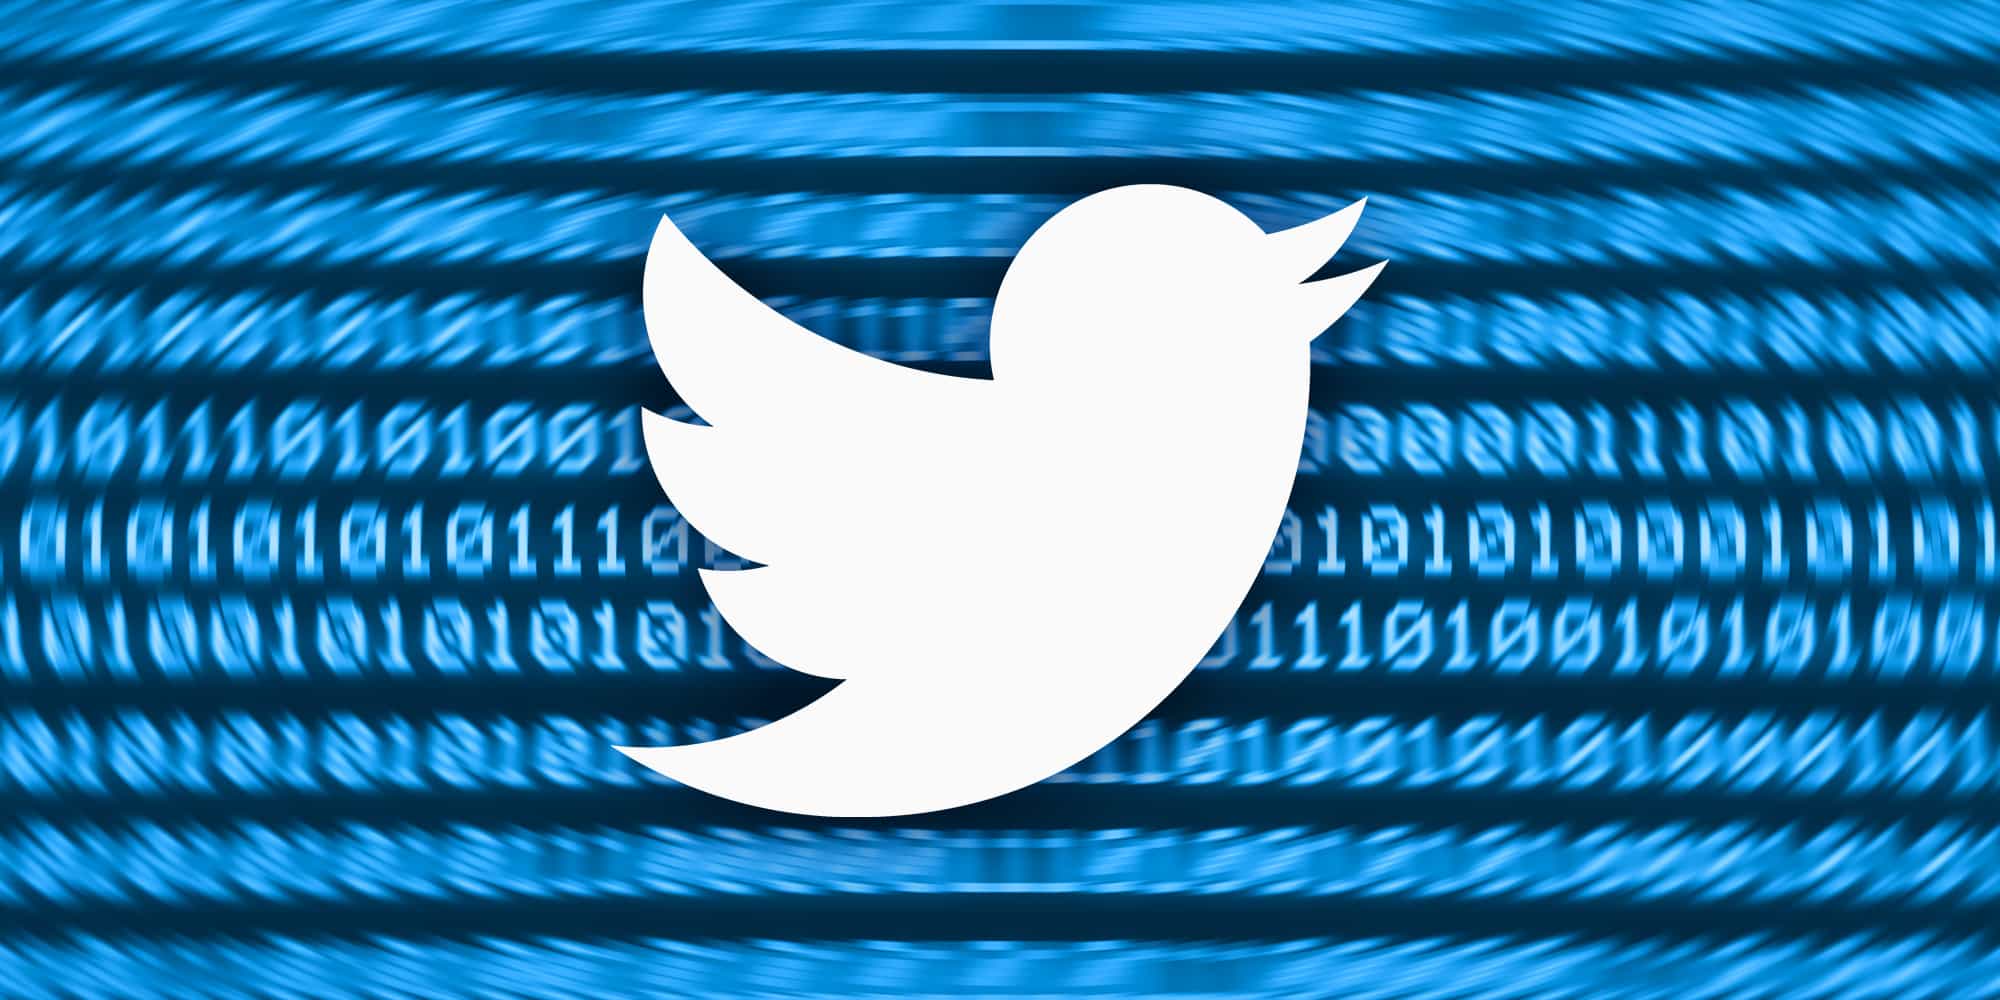 تسريب بيانات 5.4 مليون حساب على تويتر ,, والمنصة تفتح تحقيقا بذلك